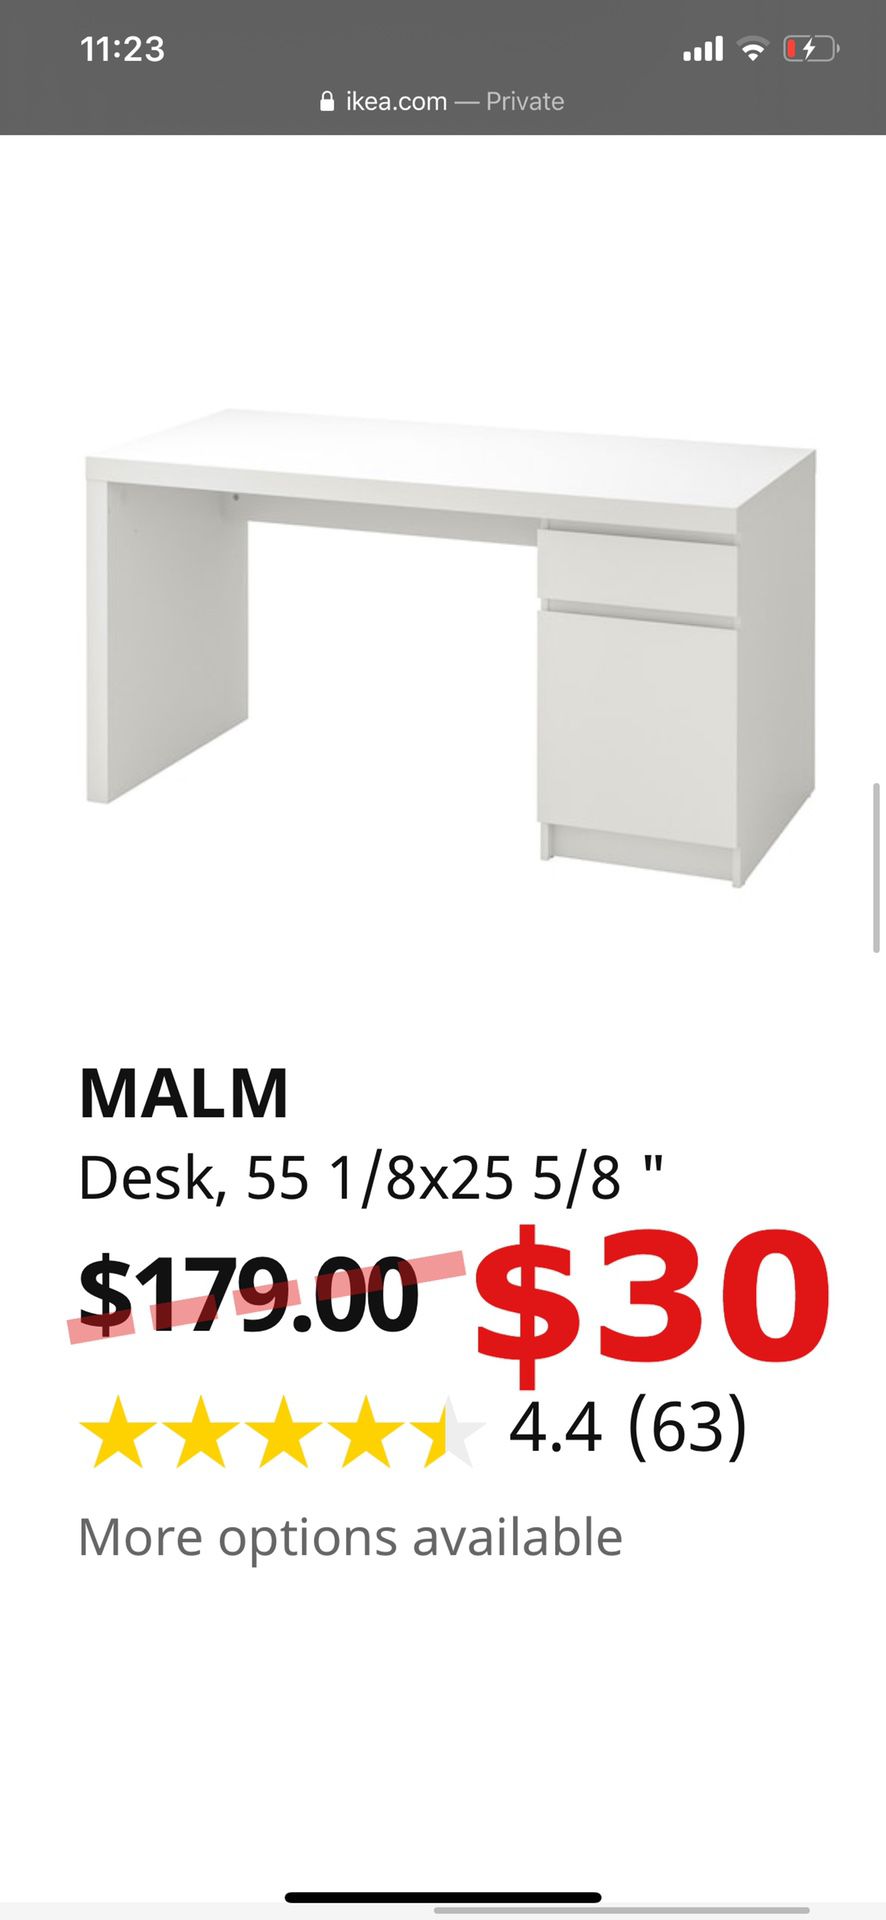 MALM IKEA DESK - USED